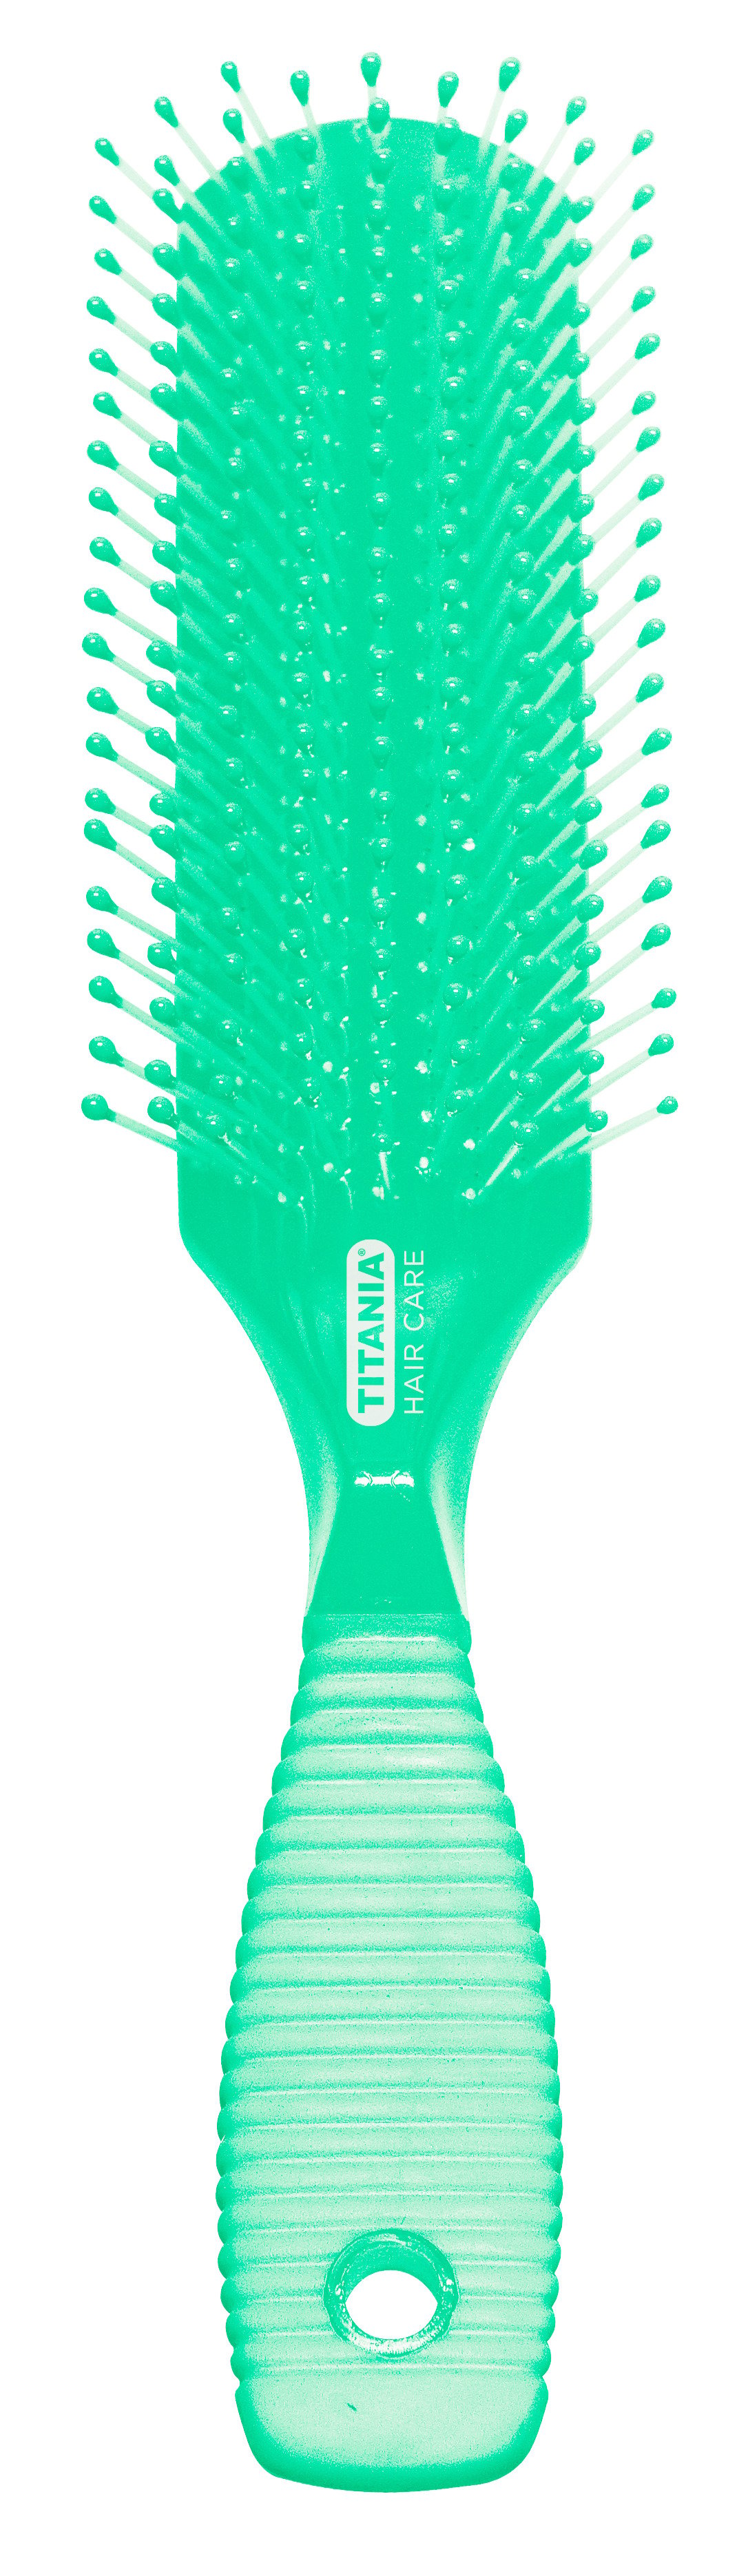 Щетка для волос Titania массажная, 9 рядов, зеленый (1829 зел) - фото 1